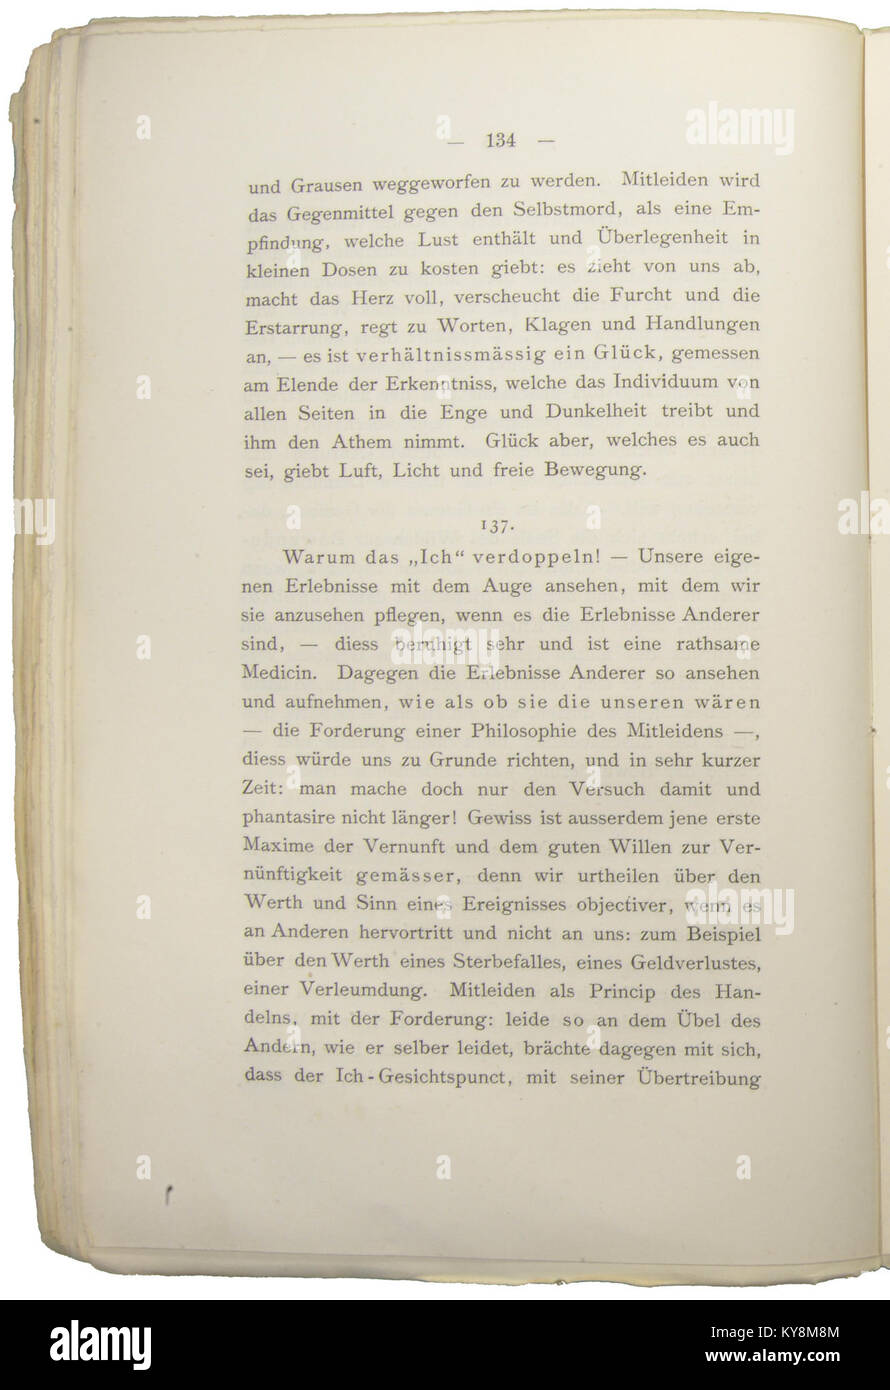 Nietzsche - Morgenröthe, 1881, p. 134 Stock Photo